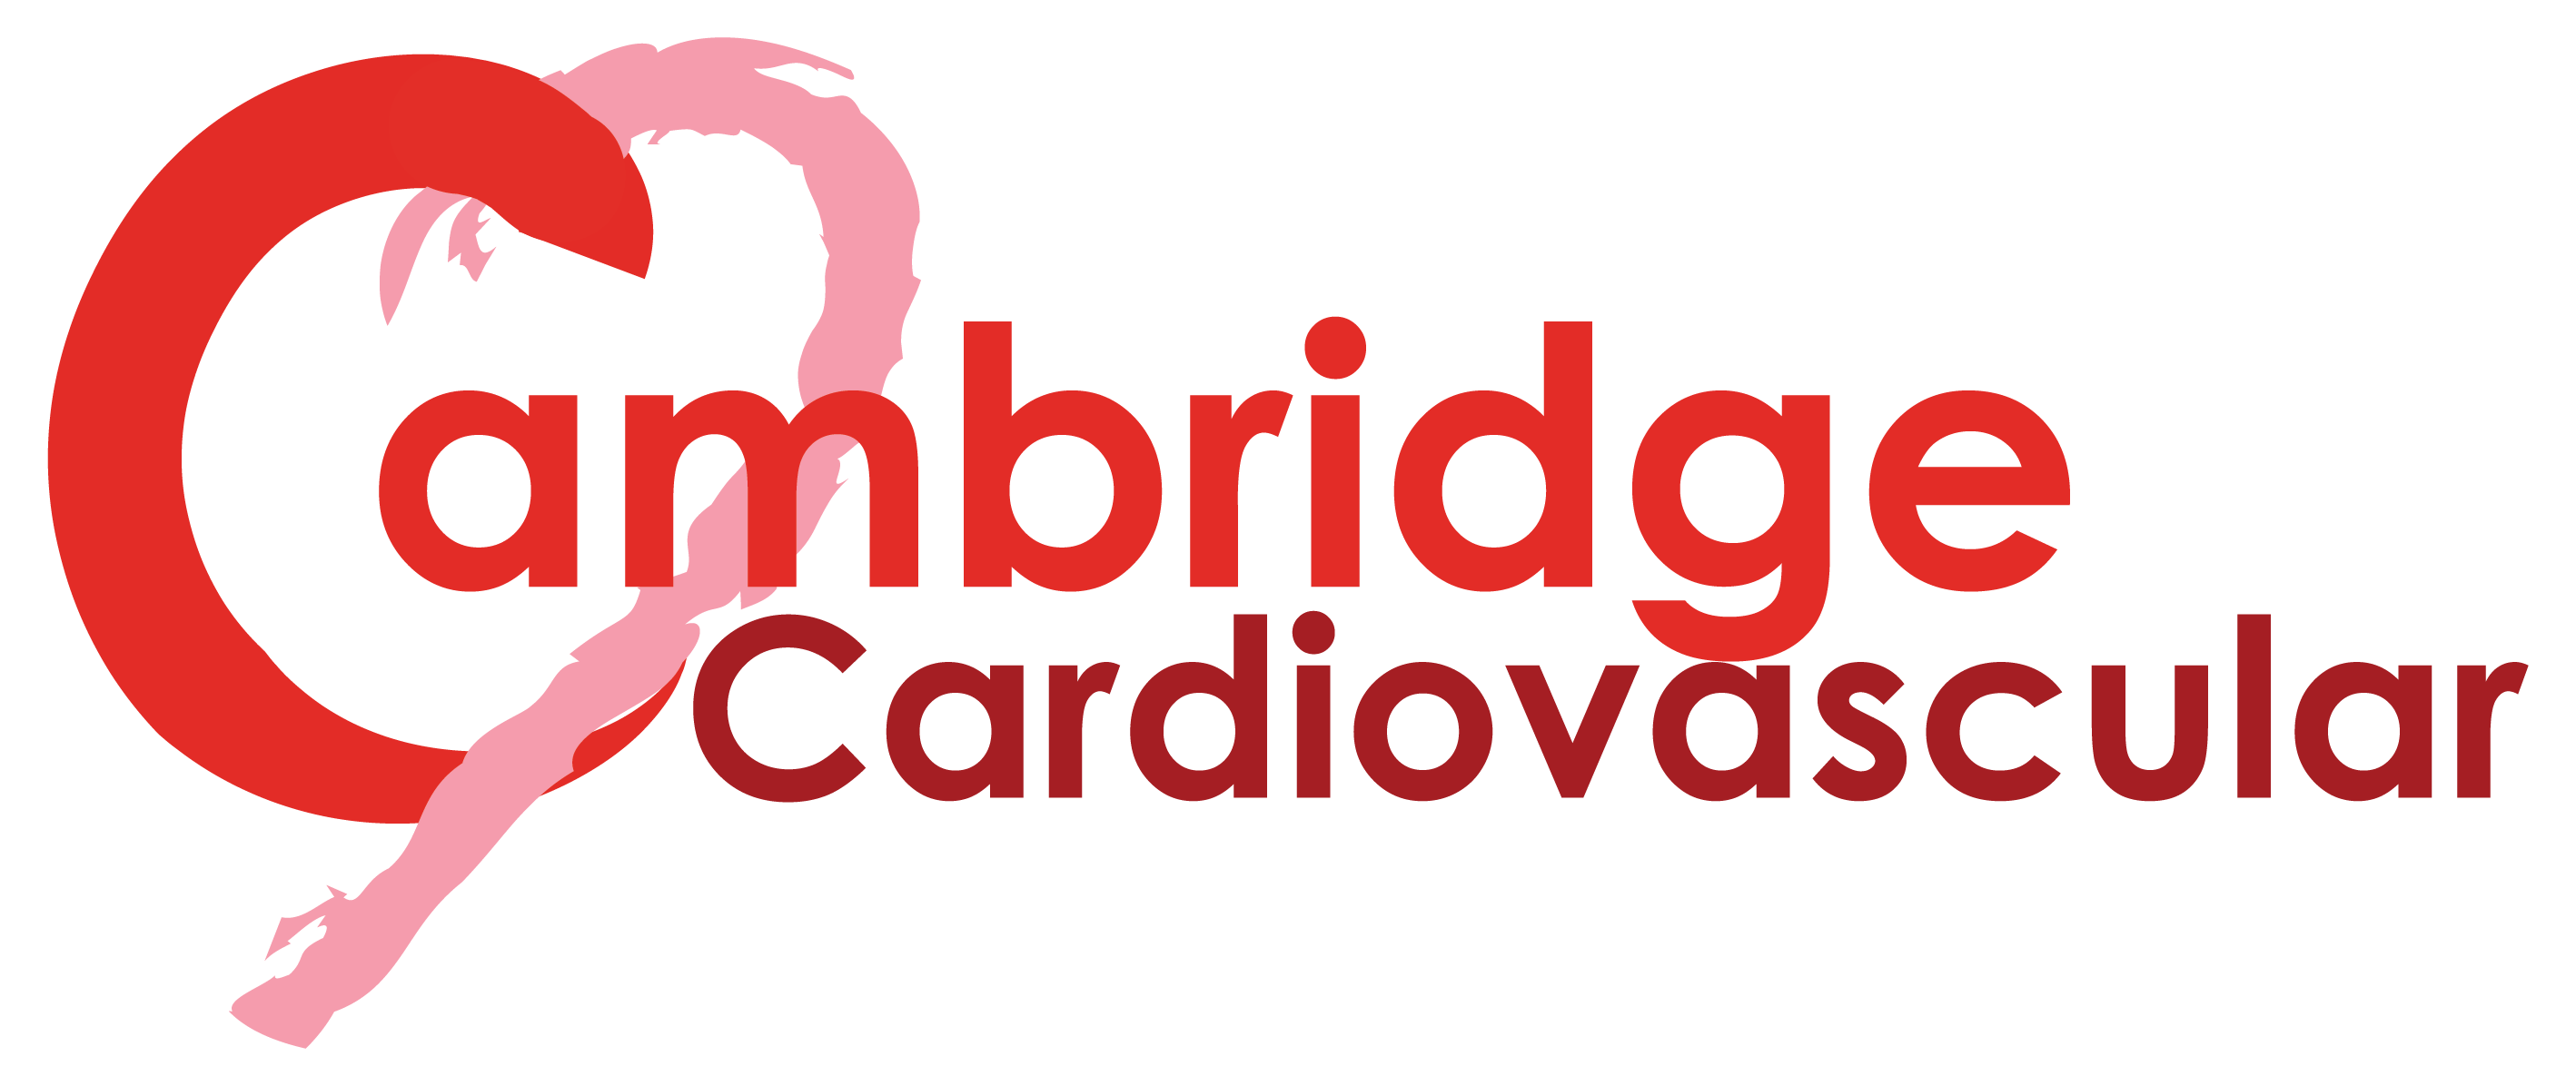 Cardiovascular Logo - Cambridge BHF Centre of Research Excellence — Cambridge Cardiovascular